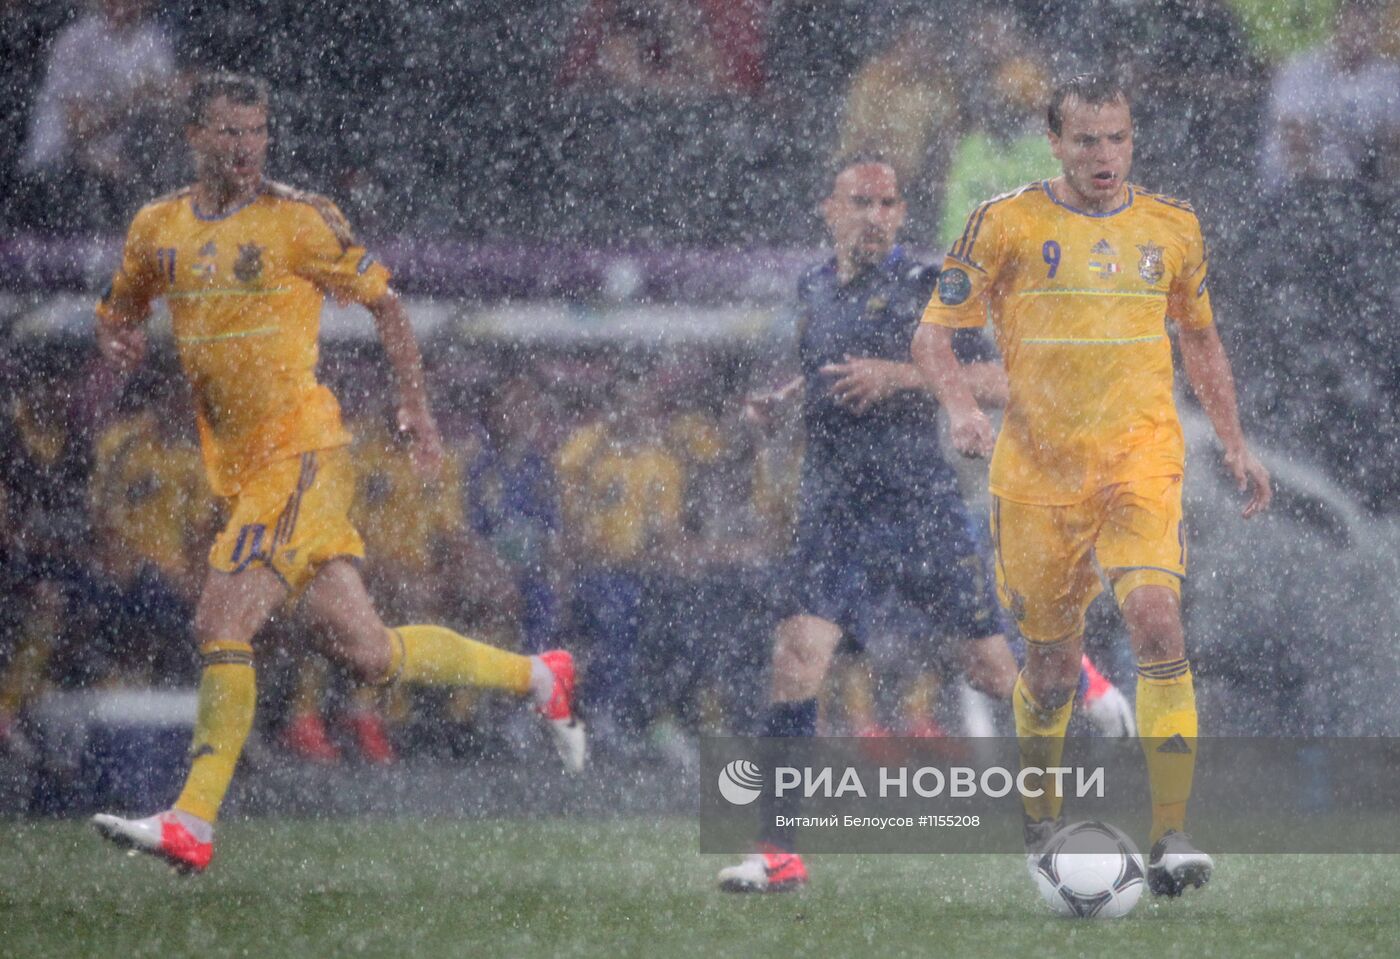 Матч ЕВРО-2012 между сборными Украины и Франции прерван